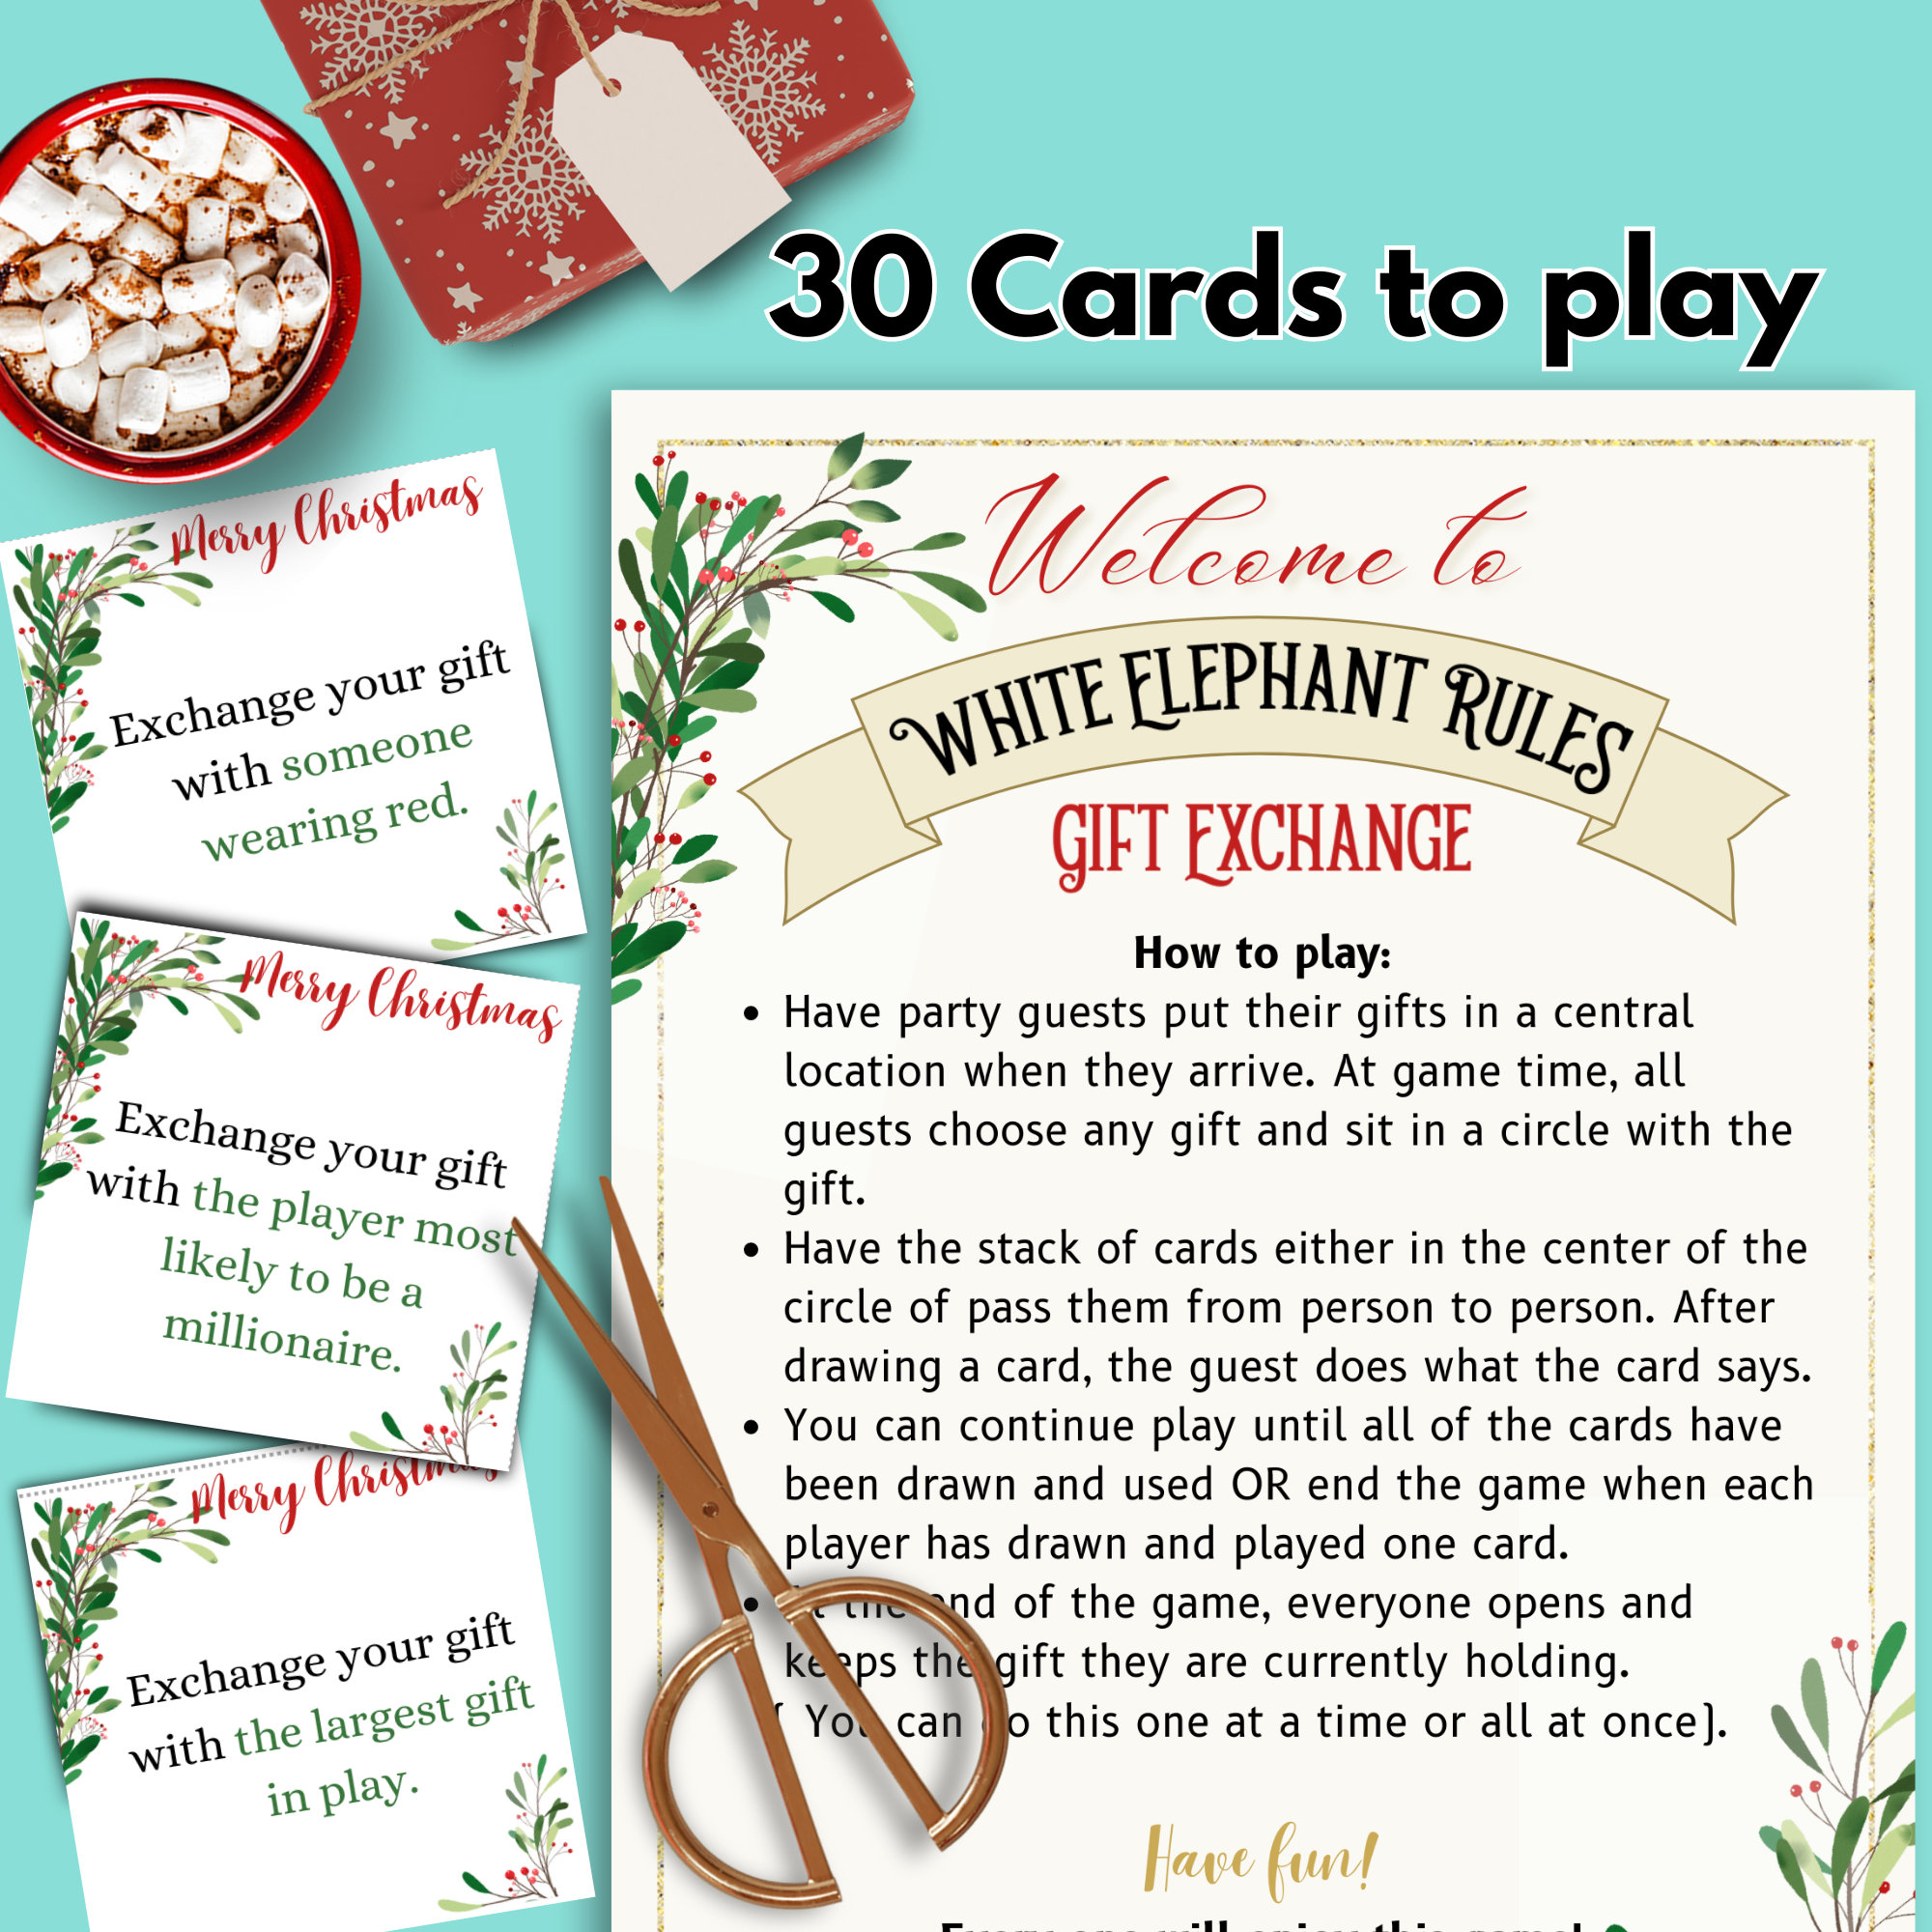 8 Fun Family Gift Exchange Ideas - White Elephant Rules